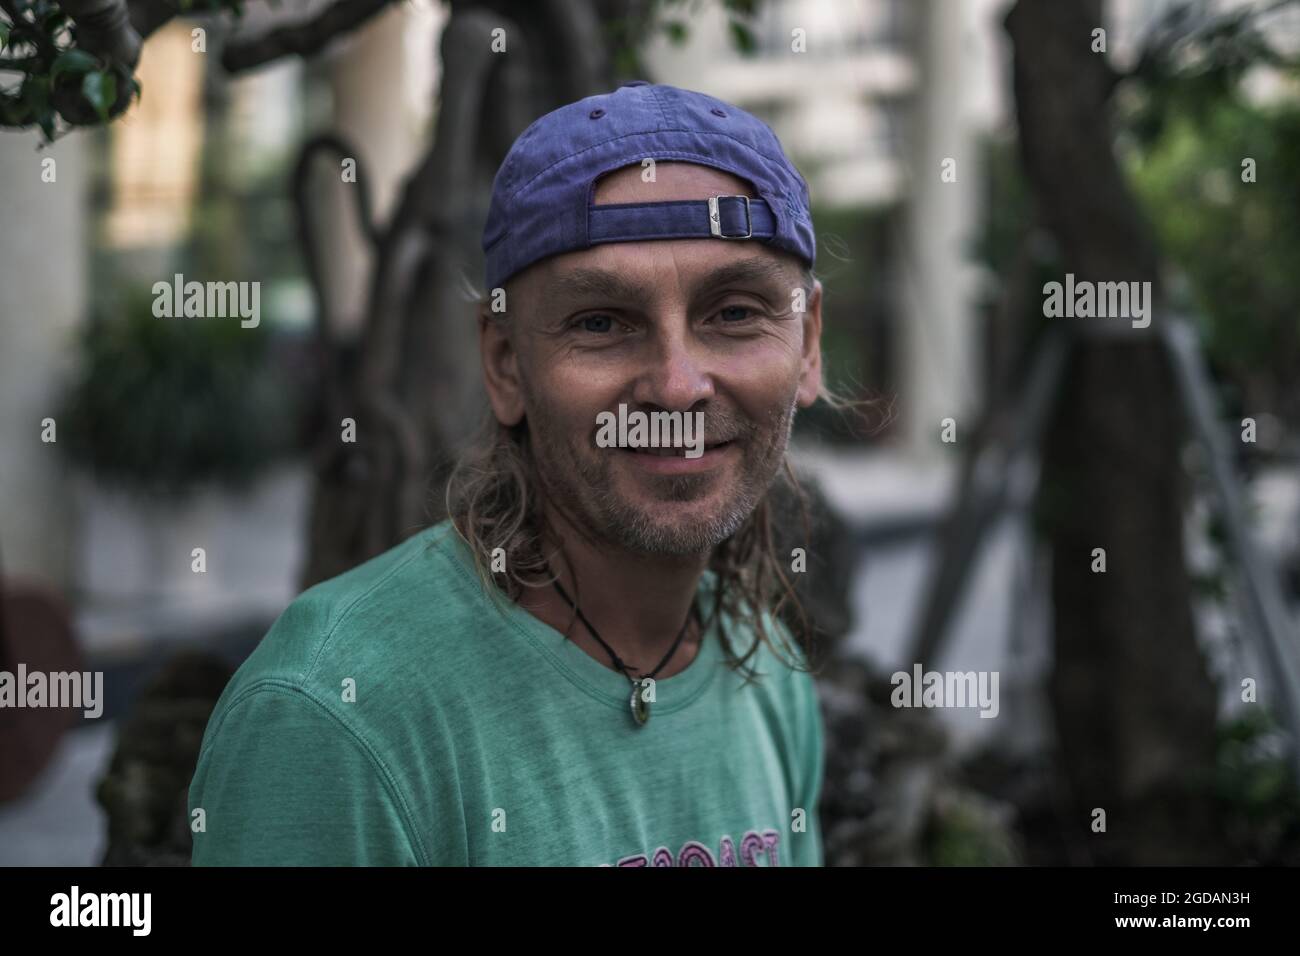 Nahaufnahme eines lächelnden älteren Mannes mit langen grauen Haaren und grünem T-Shirt und Mütze. Obdachlose Person. Hippie-Style. Hochwertige Fotos Stockfoto